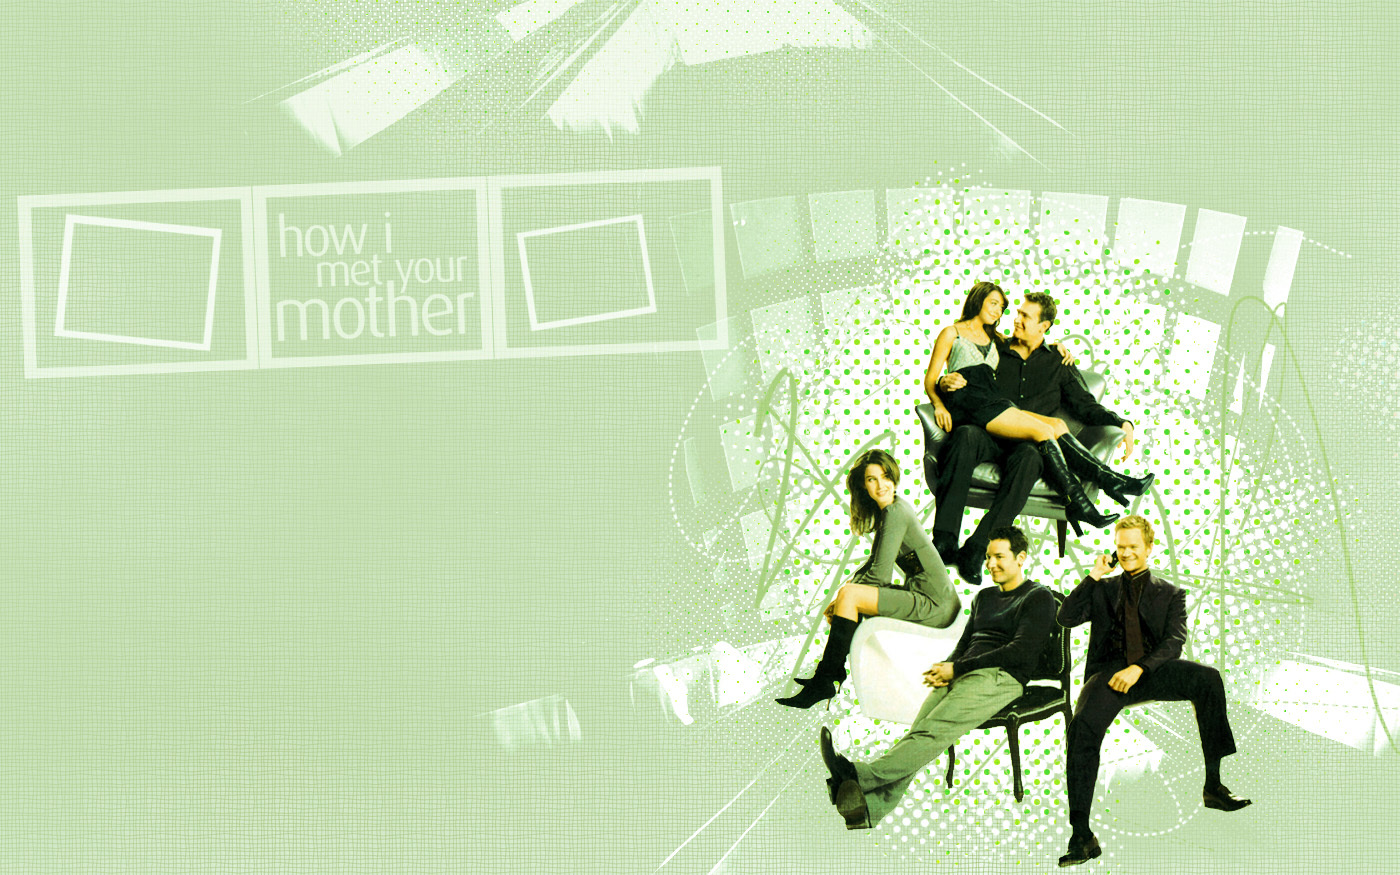 HIMYM Wallpaper - How I Met Your Mother 1400x875 1280x800